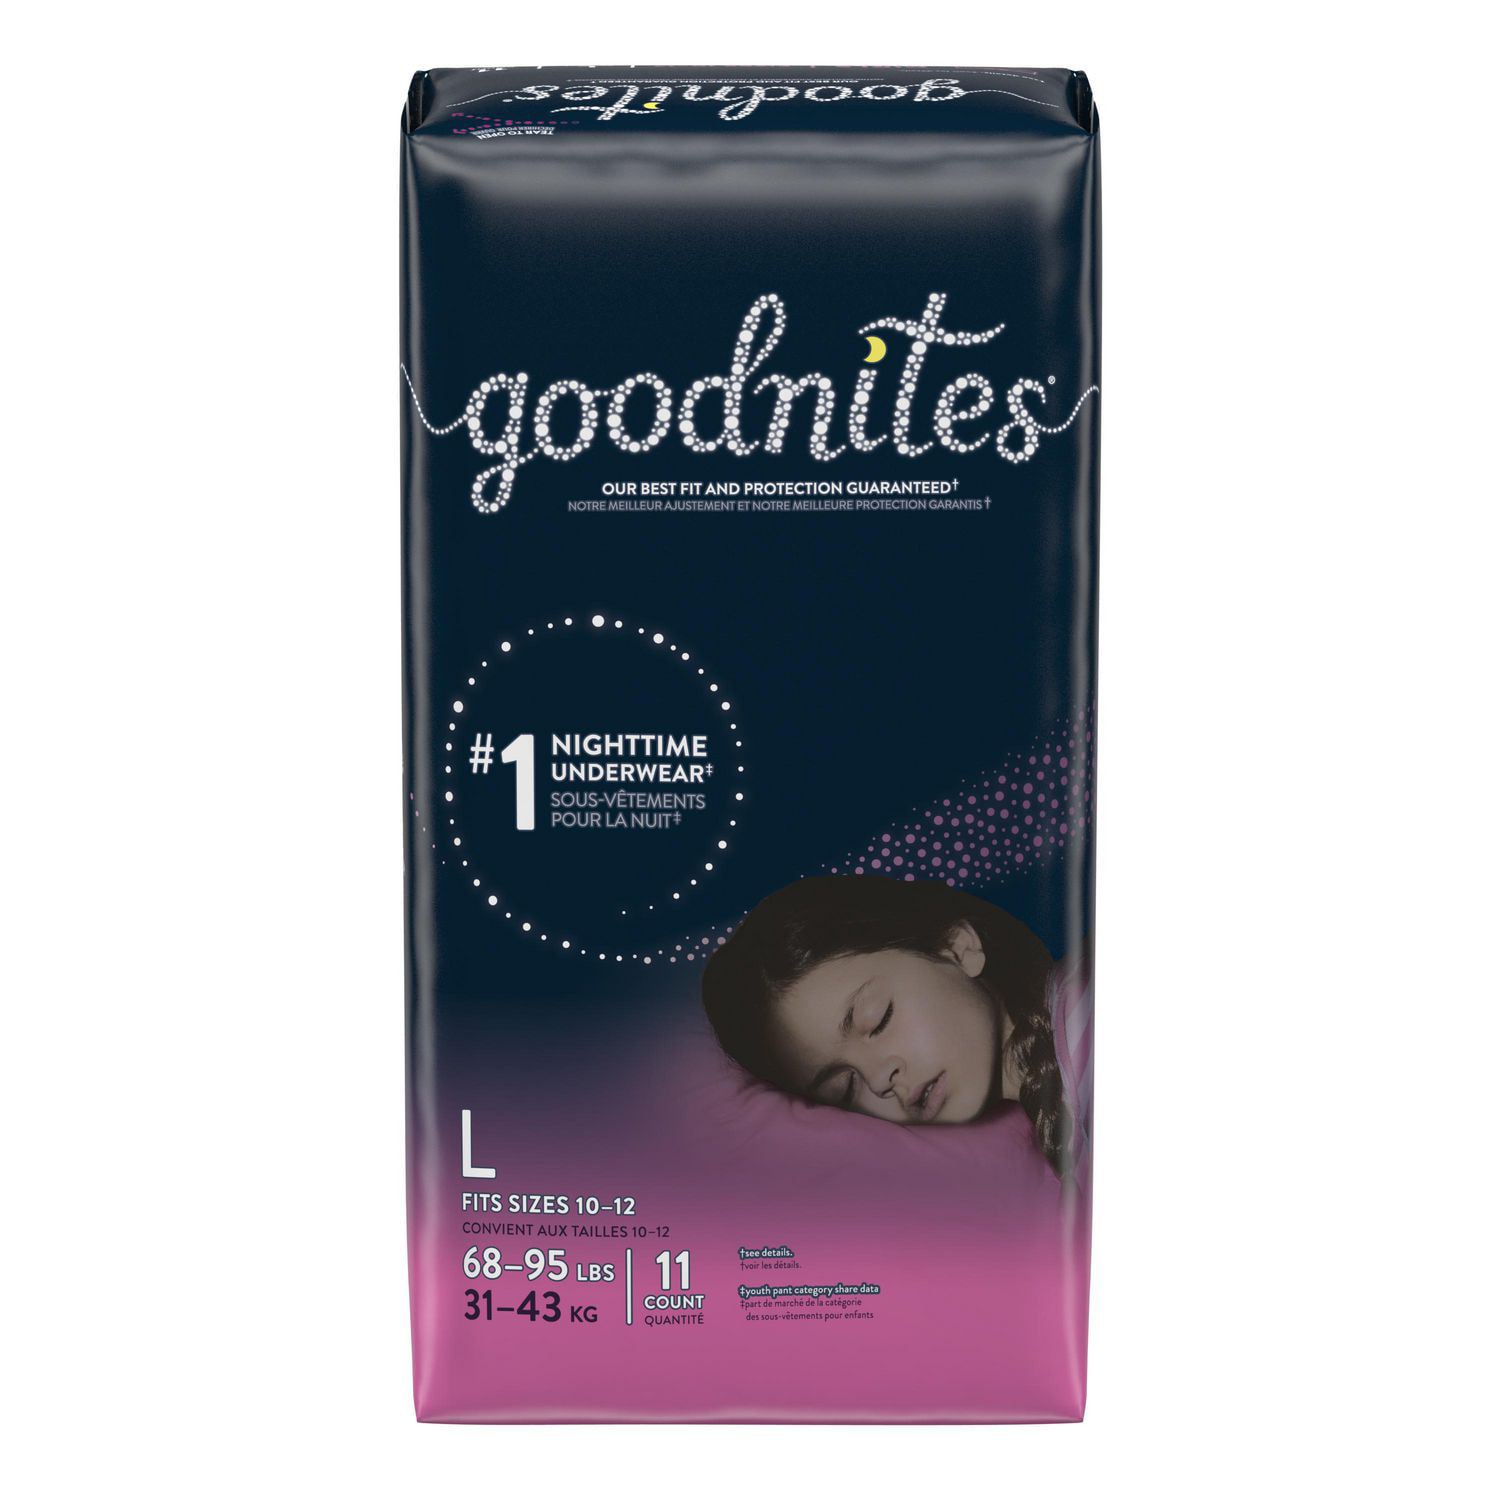 Goodnites Girls' Nighttime Bedwetting Underwear, Jumbo Pack, XS, S